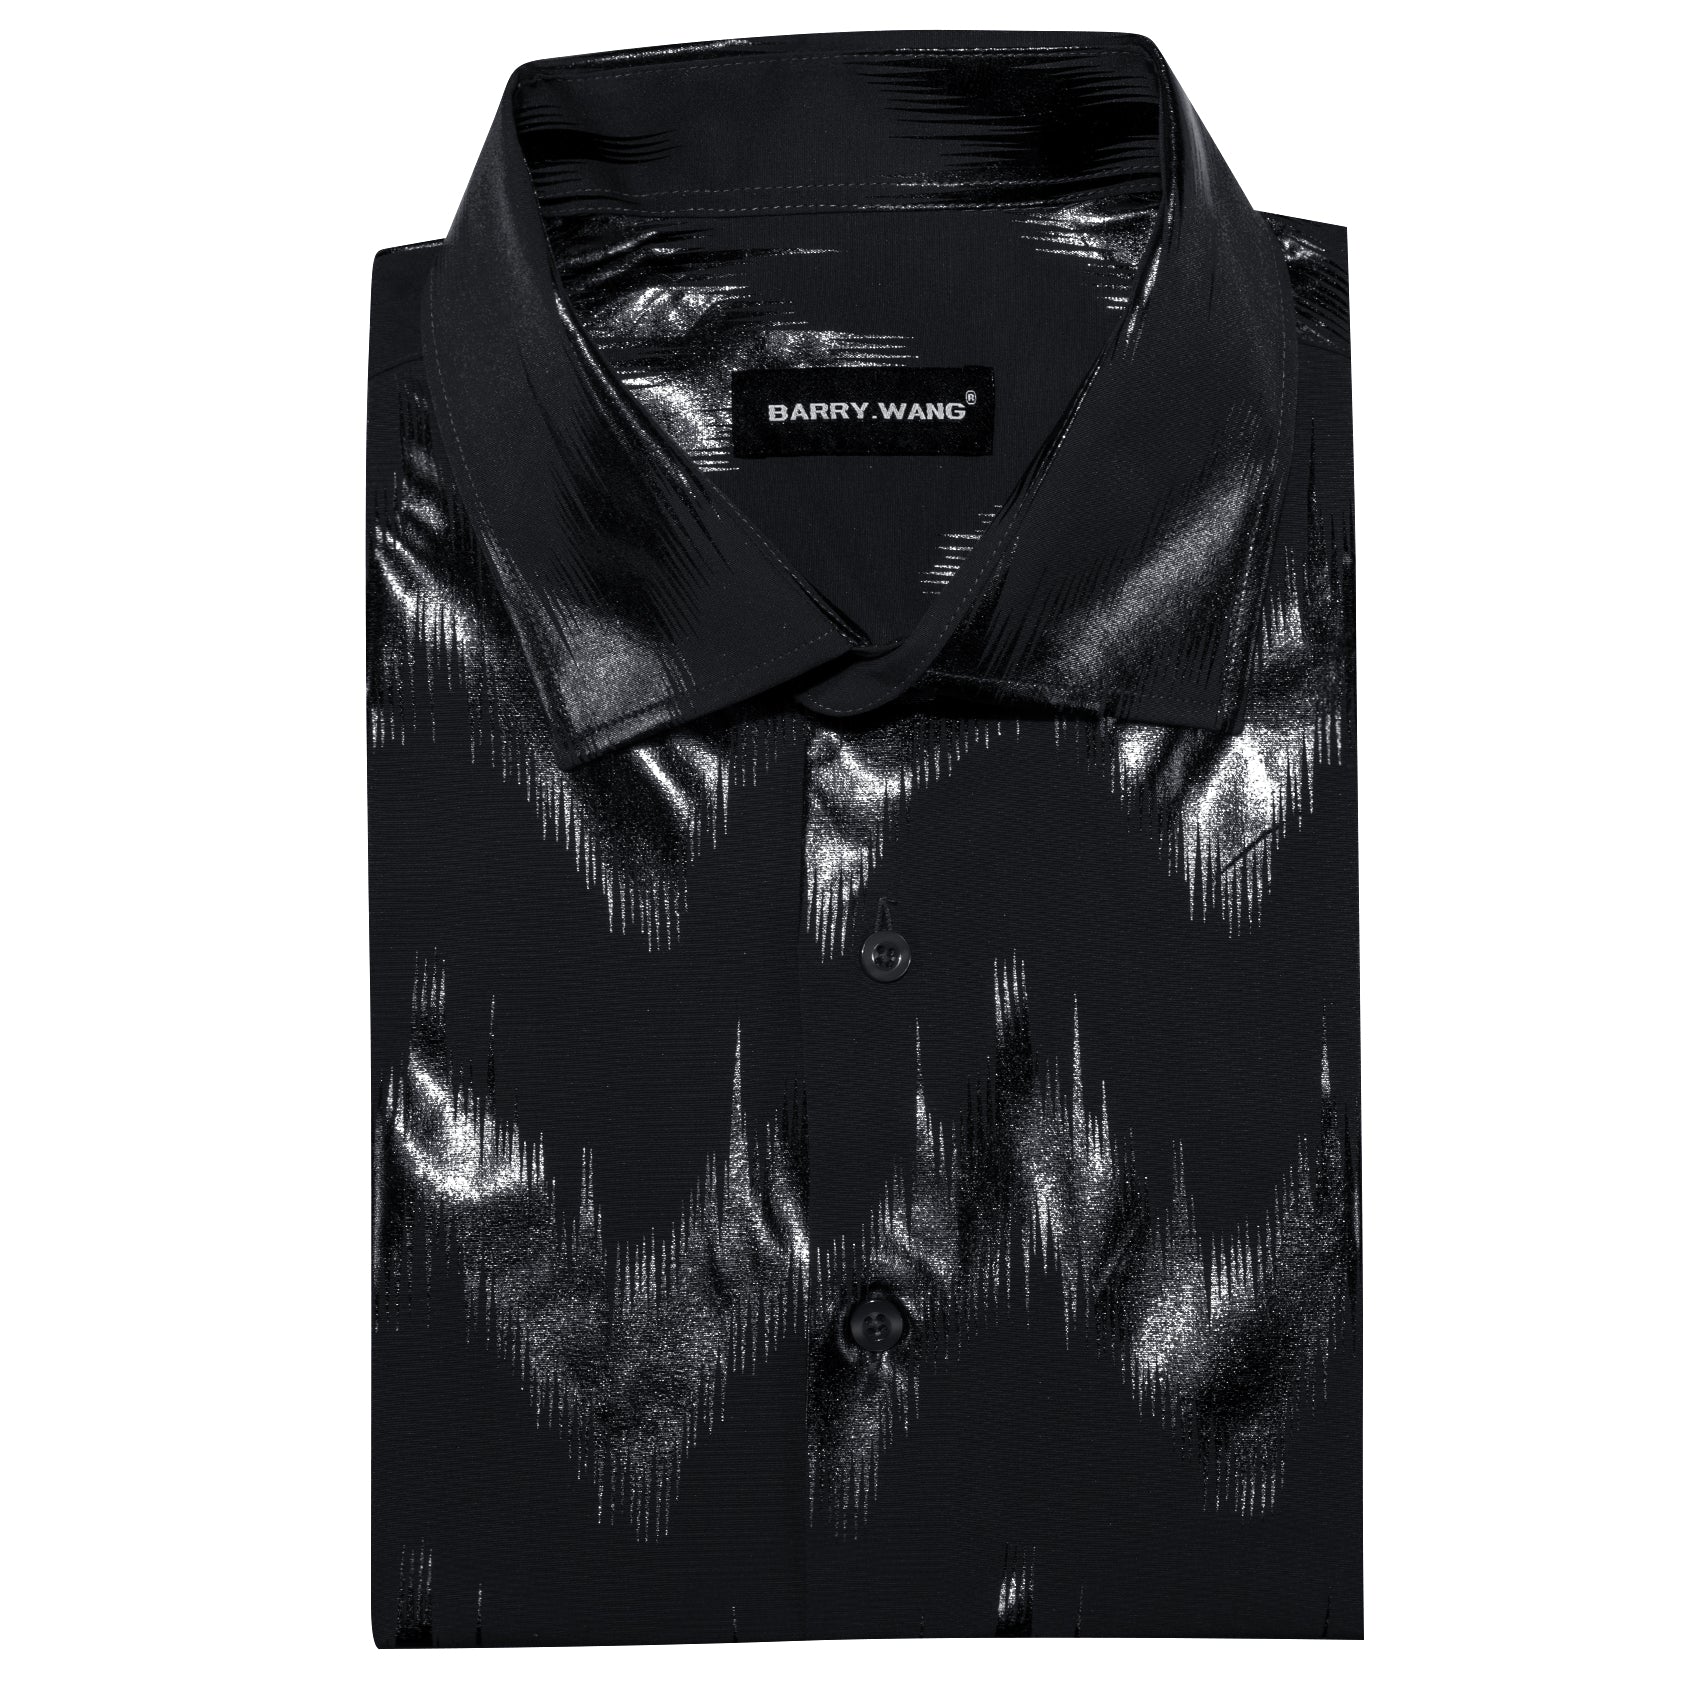 Barry.wang Stylish Shirt Bronzing Printing Black Men's Shirt